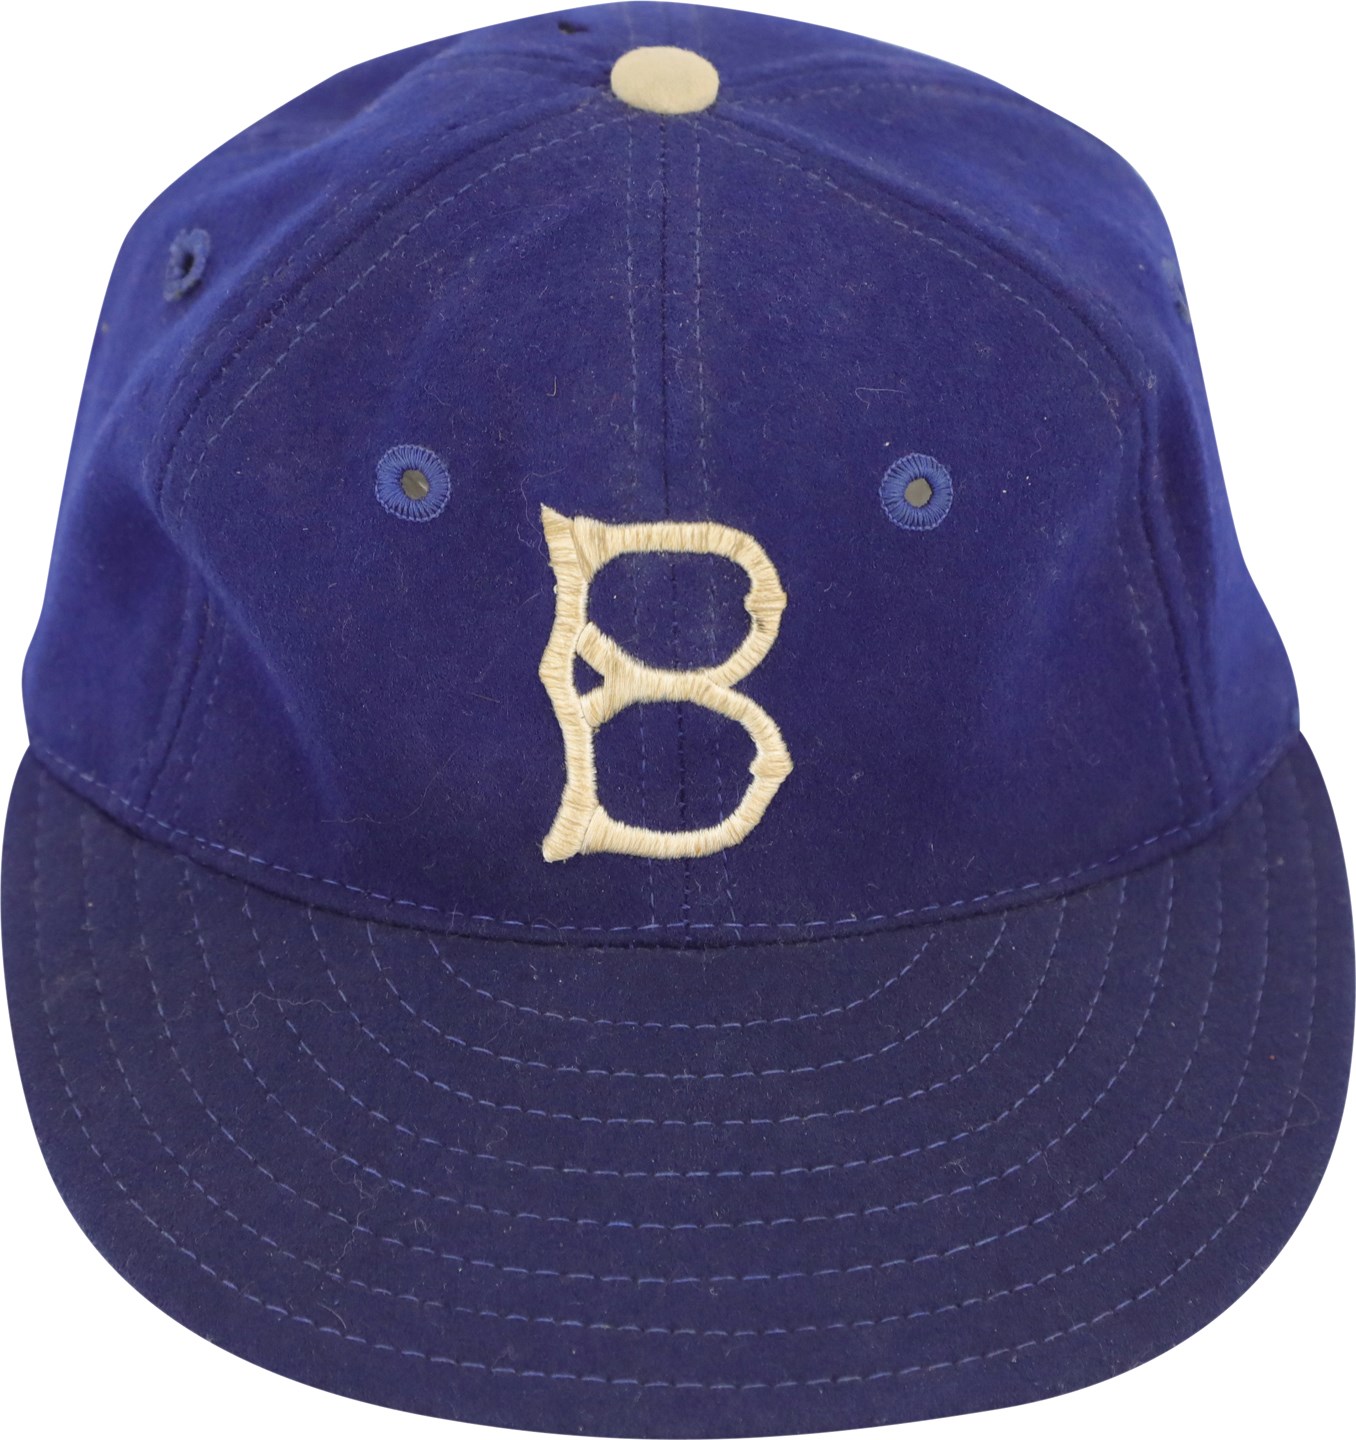 - Circa 1950 Pee Wee Reese Brooklyn Dodgers Game Worn Hat (Dobbins LOA)